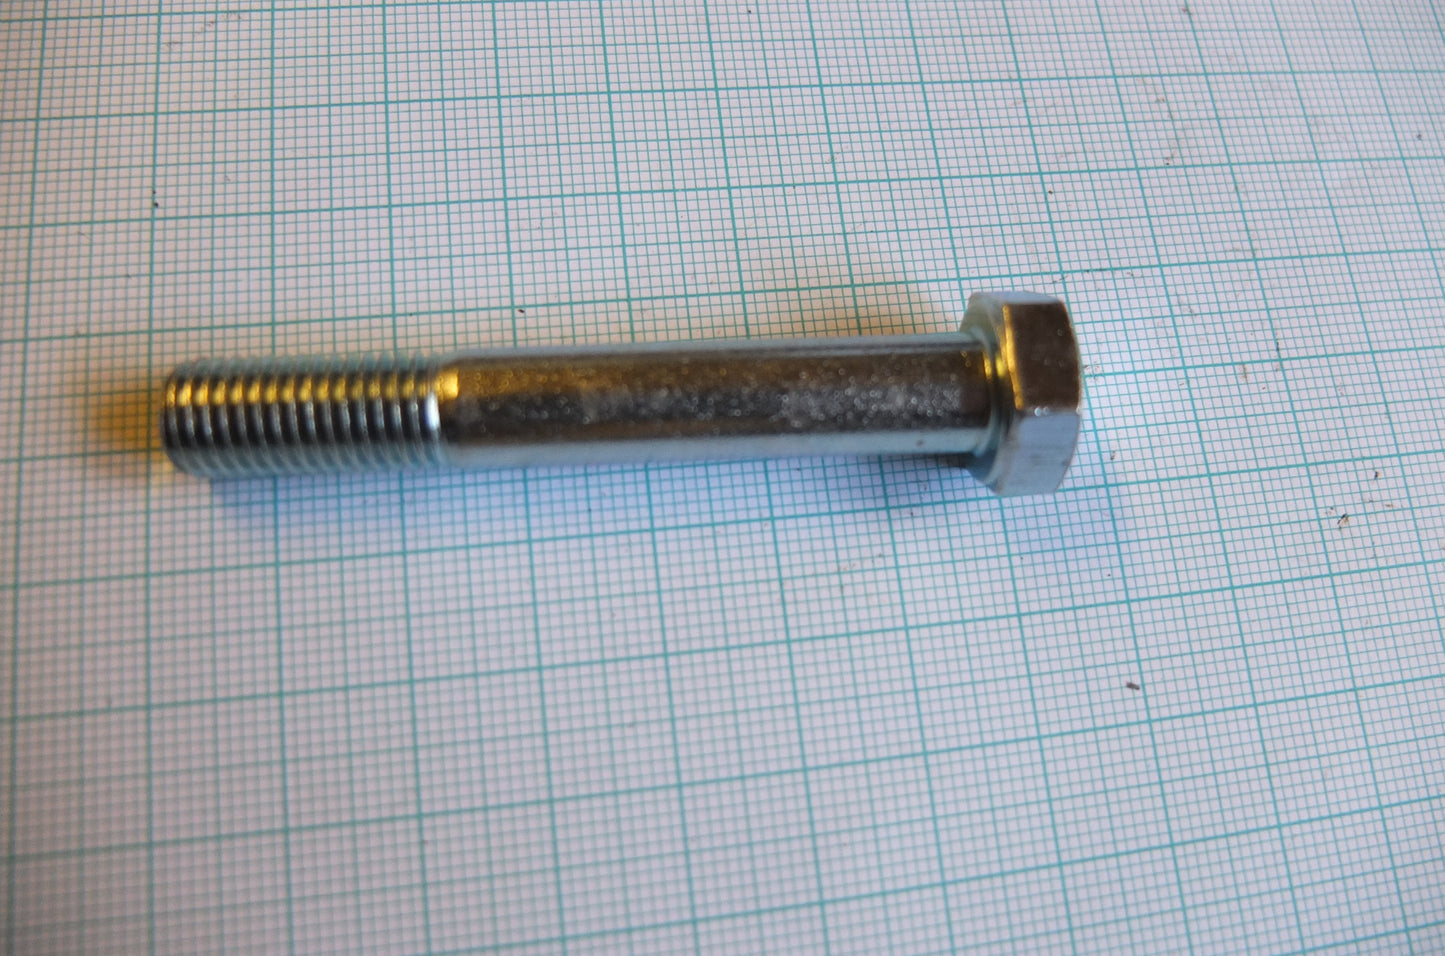 P4/080 Anchor bracket bolt (long)